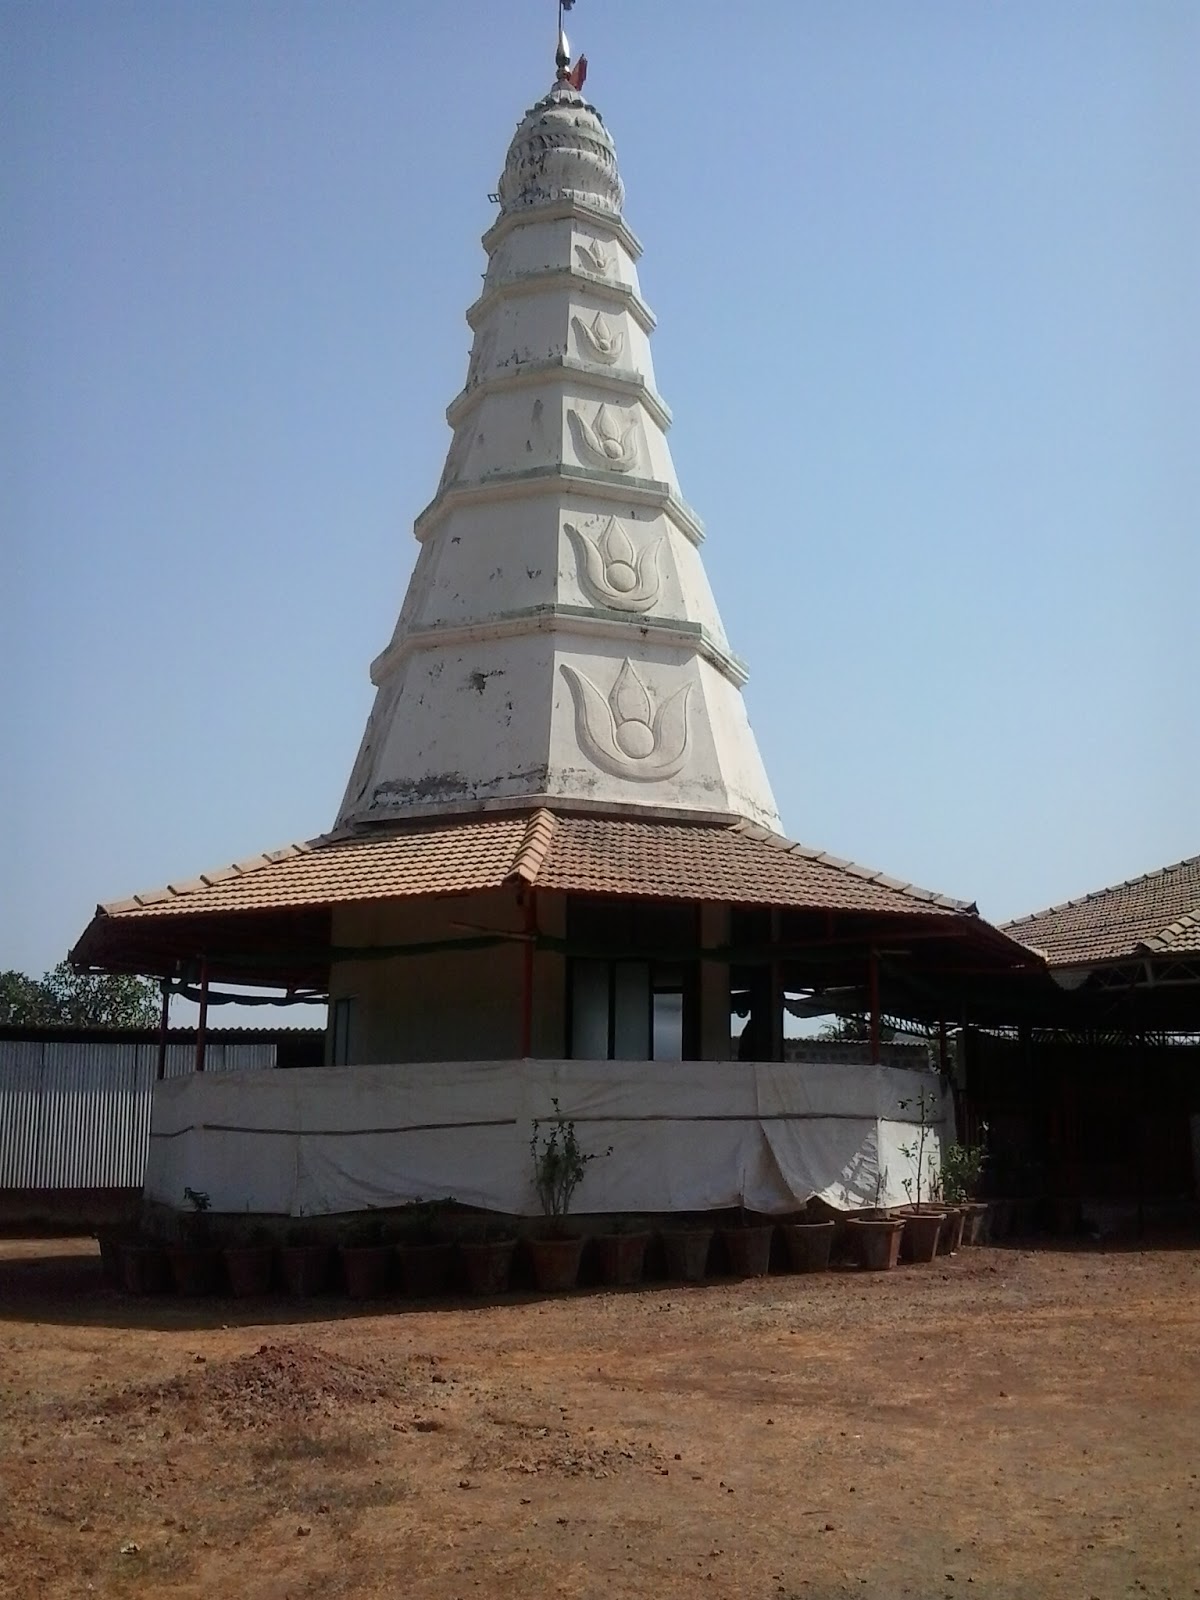 swami samarth temple in usa